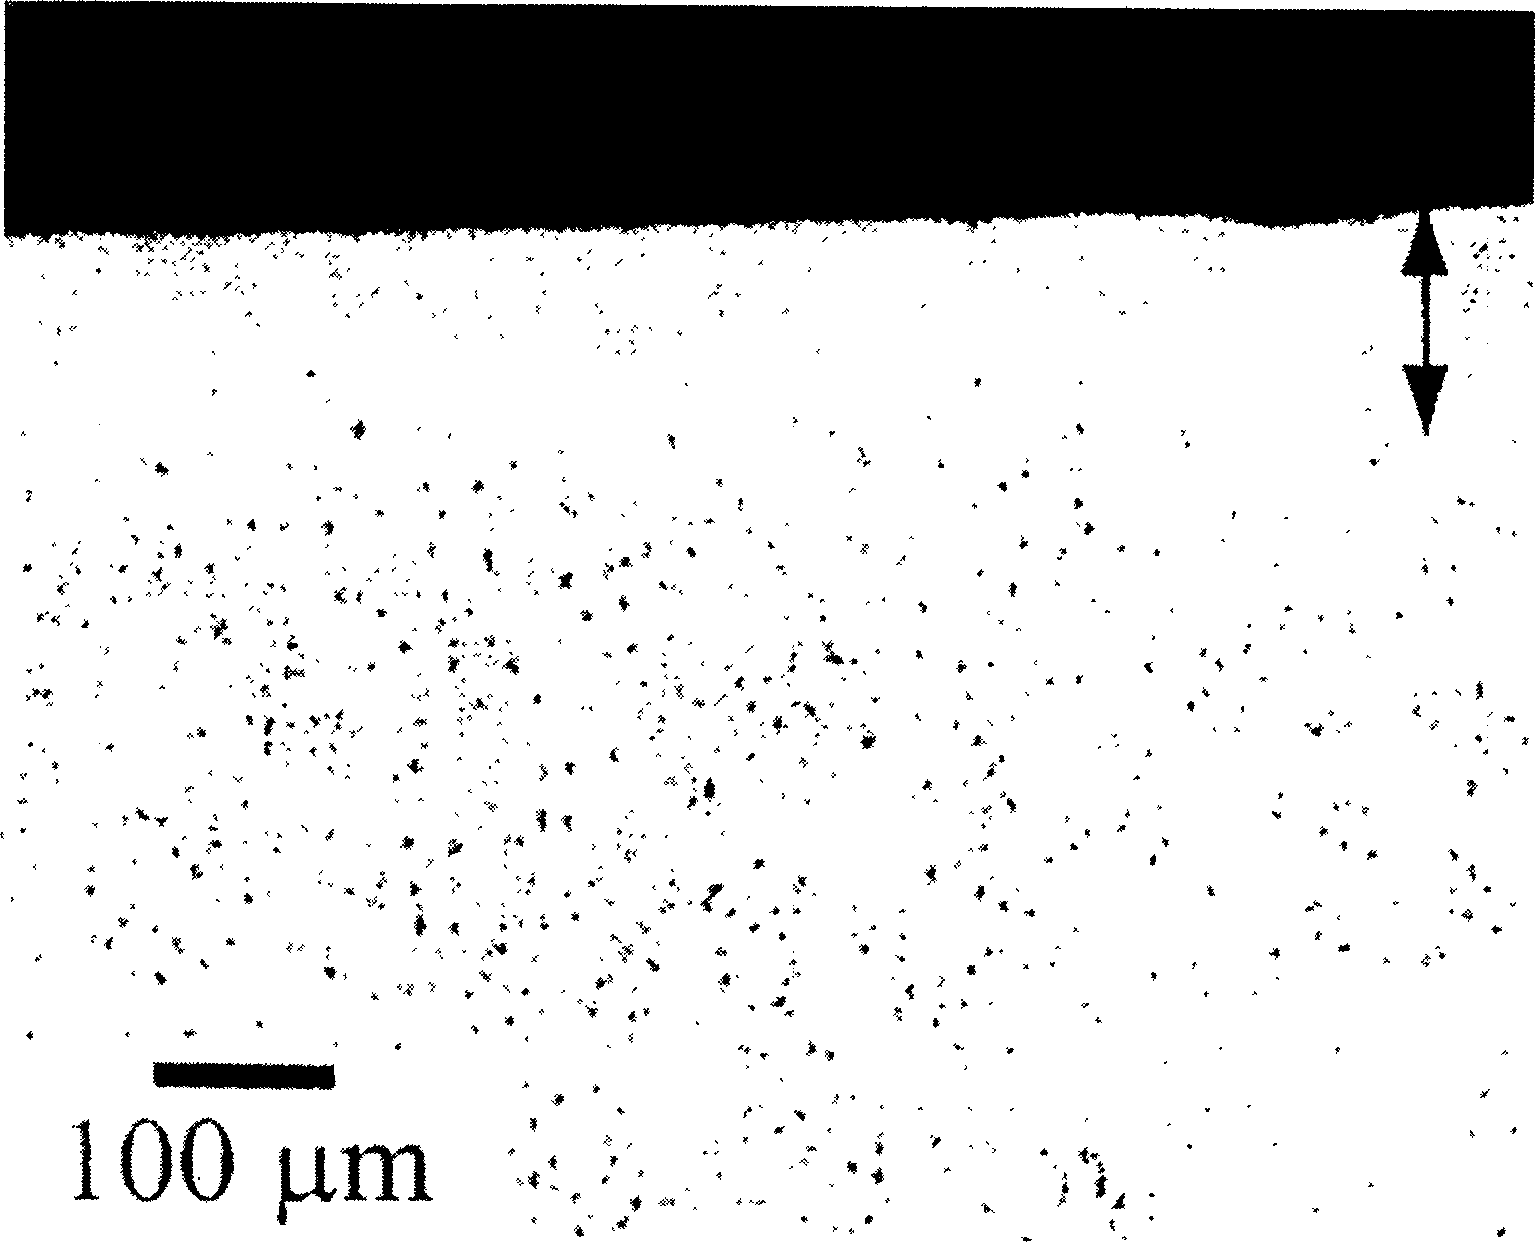 Method of preparing lanthanum lead zirconium titanate transparent photoelectric ceramic